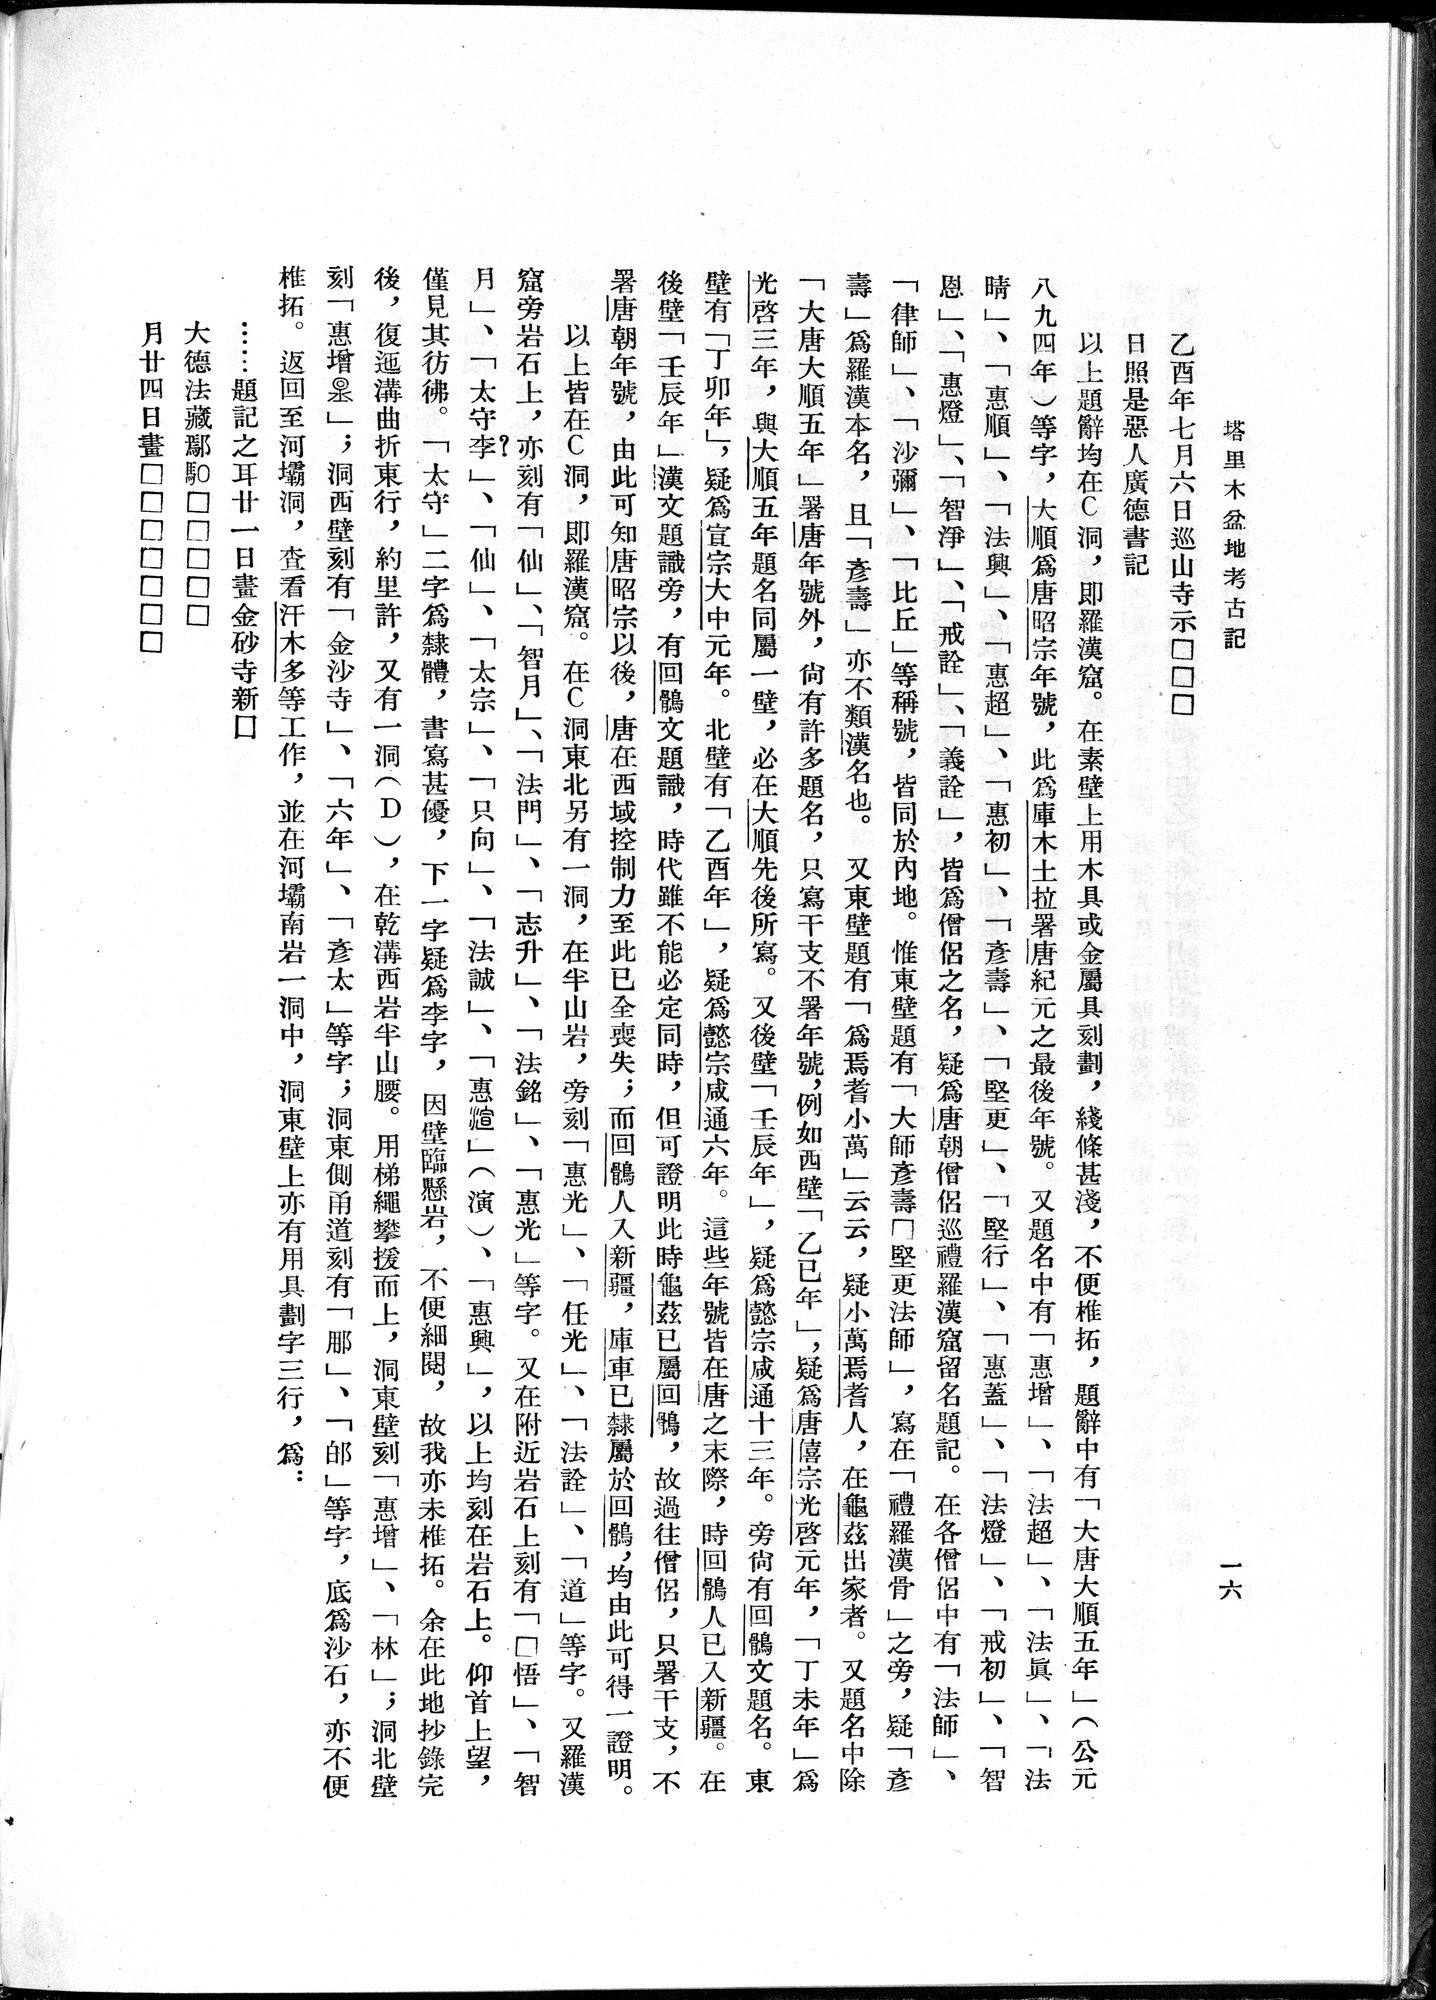 塔里木盆地考古記 : vol.1 / 40 ページ（白黒高解像度画像）